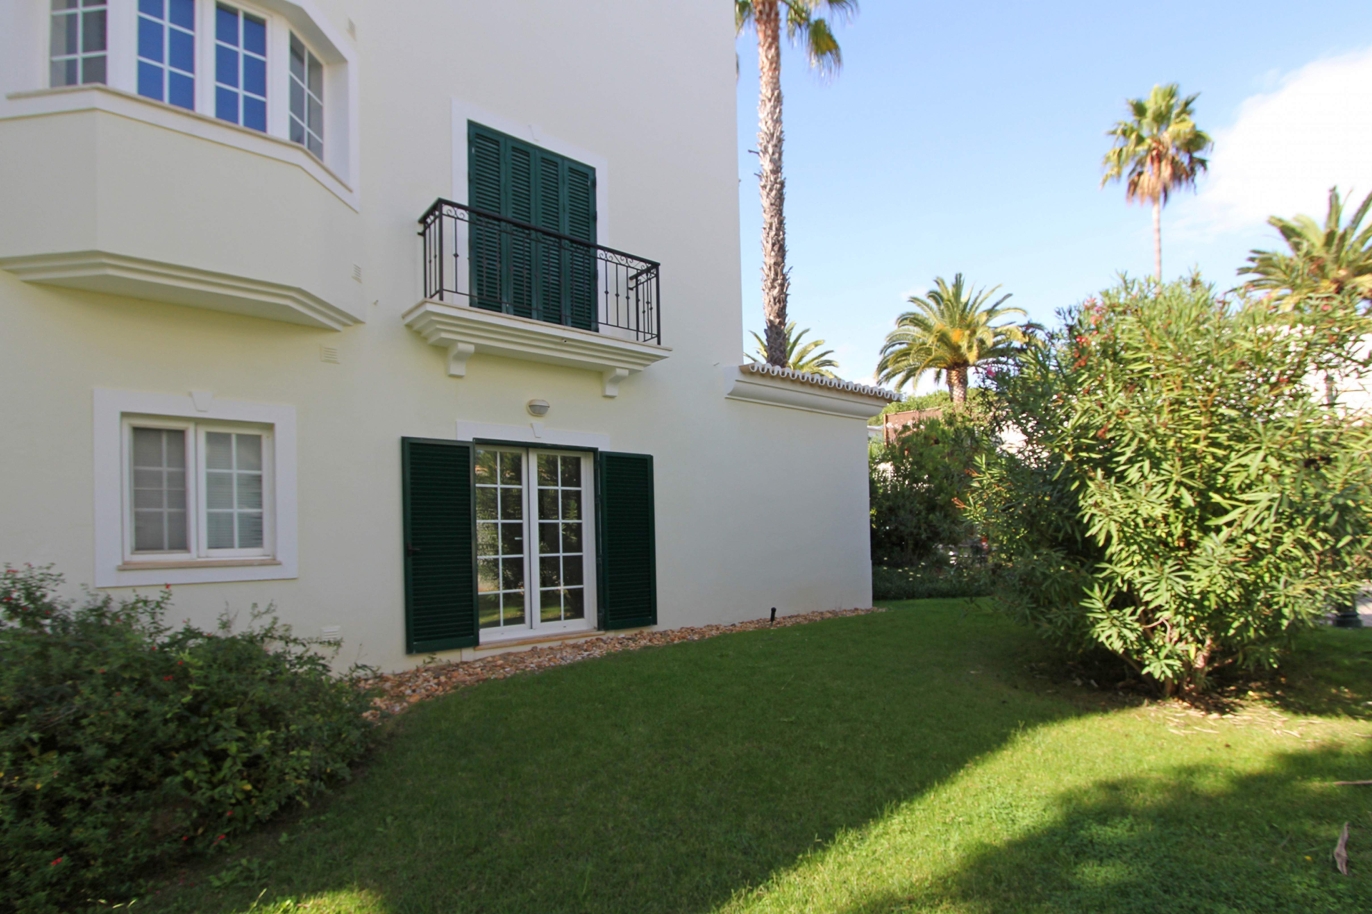 Appartement zu verkaufen, Strandnähe, Vale do Lobo, Algarve, Portugal_120368